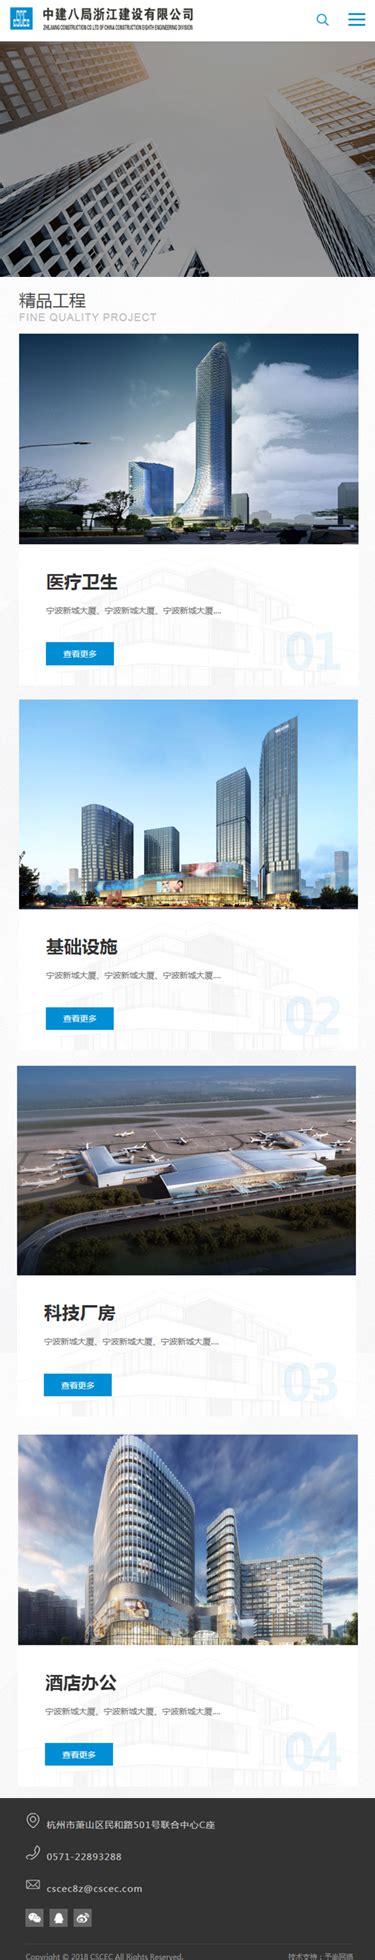 杭州专业的酒店网站建设方案设计企业,做专业的杭州网站建设公司